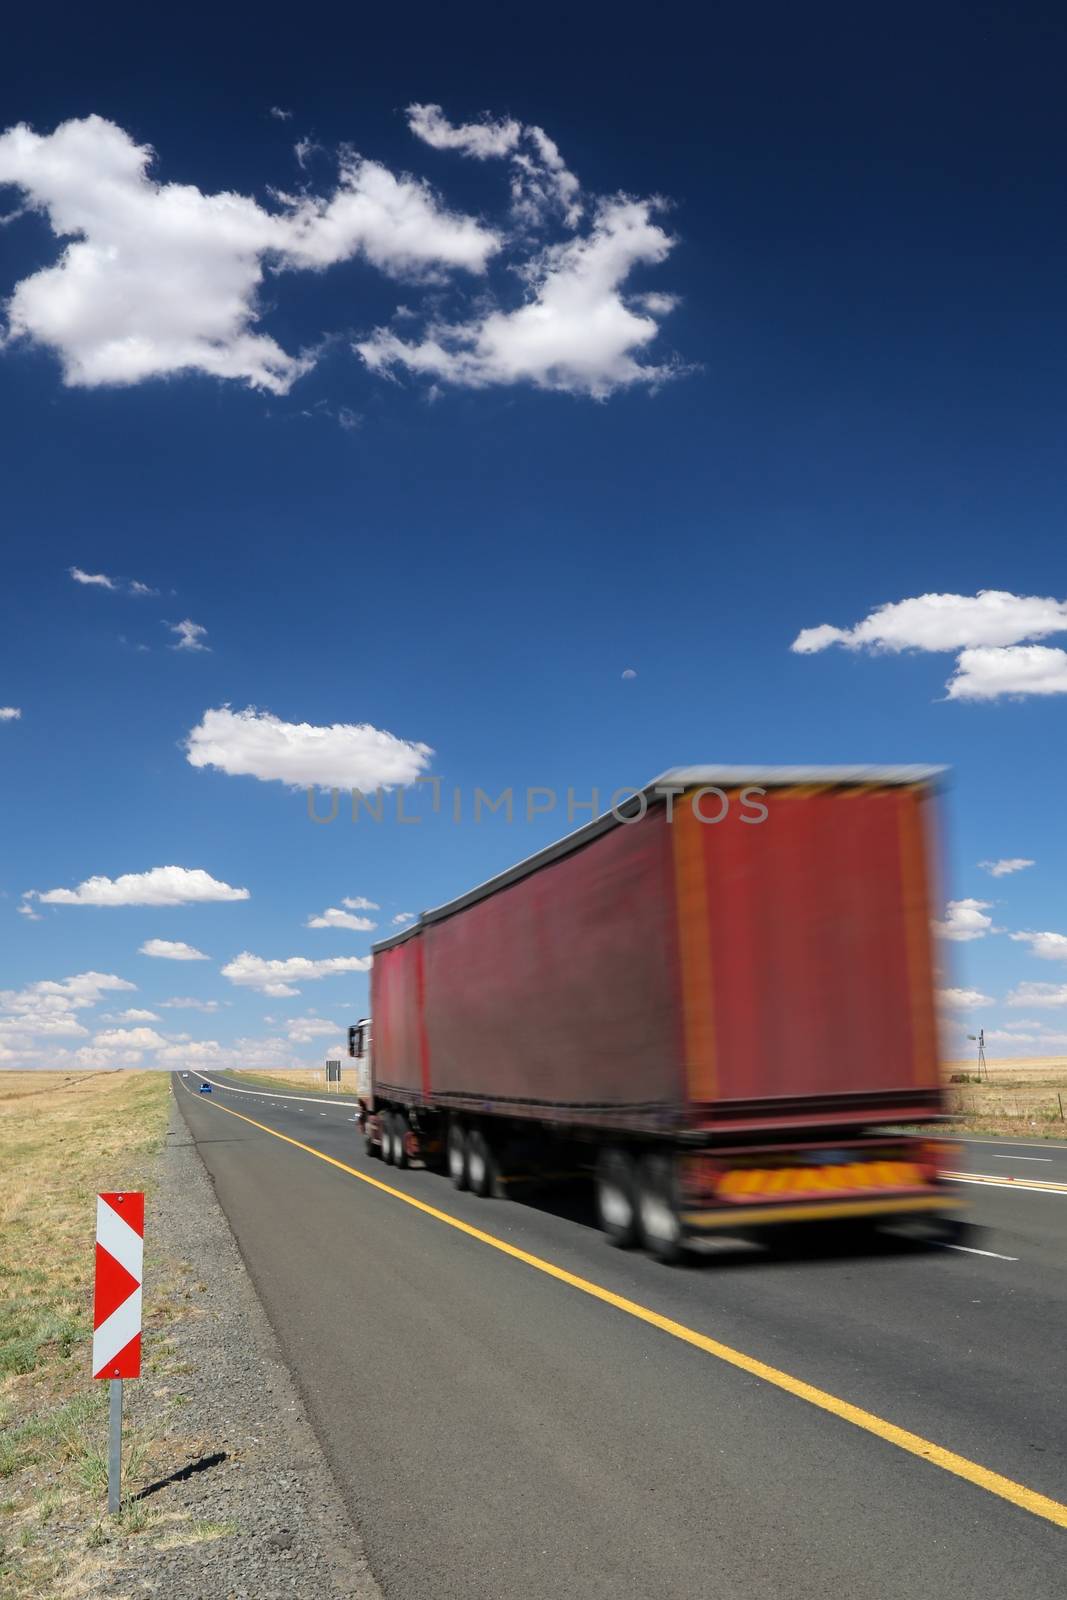 Trucker Vehicle on Road by fouroaks